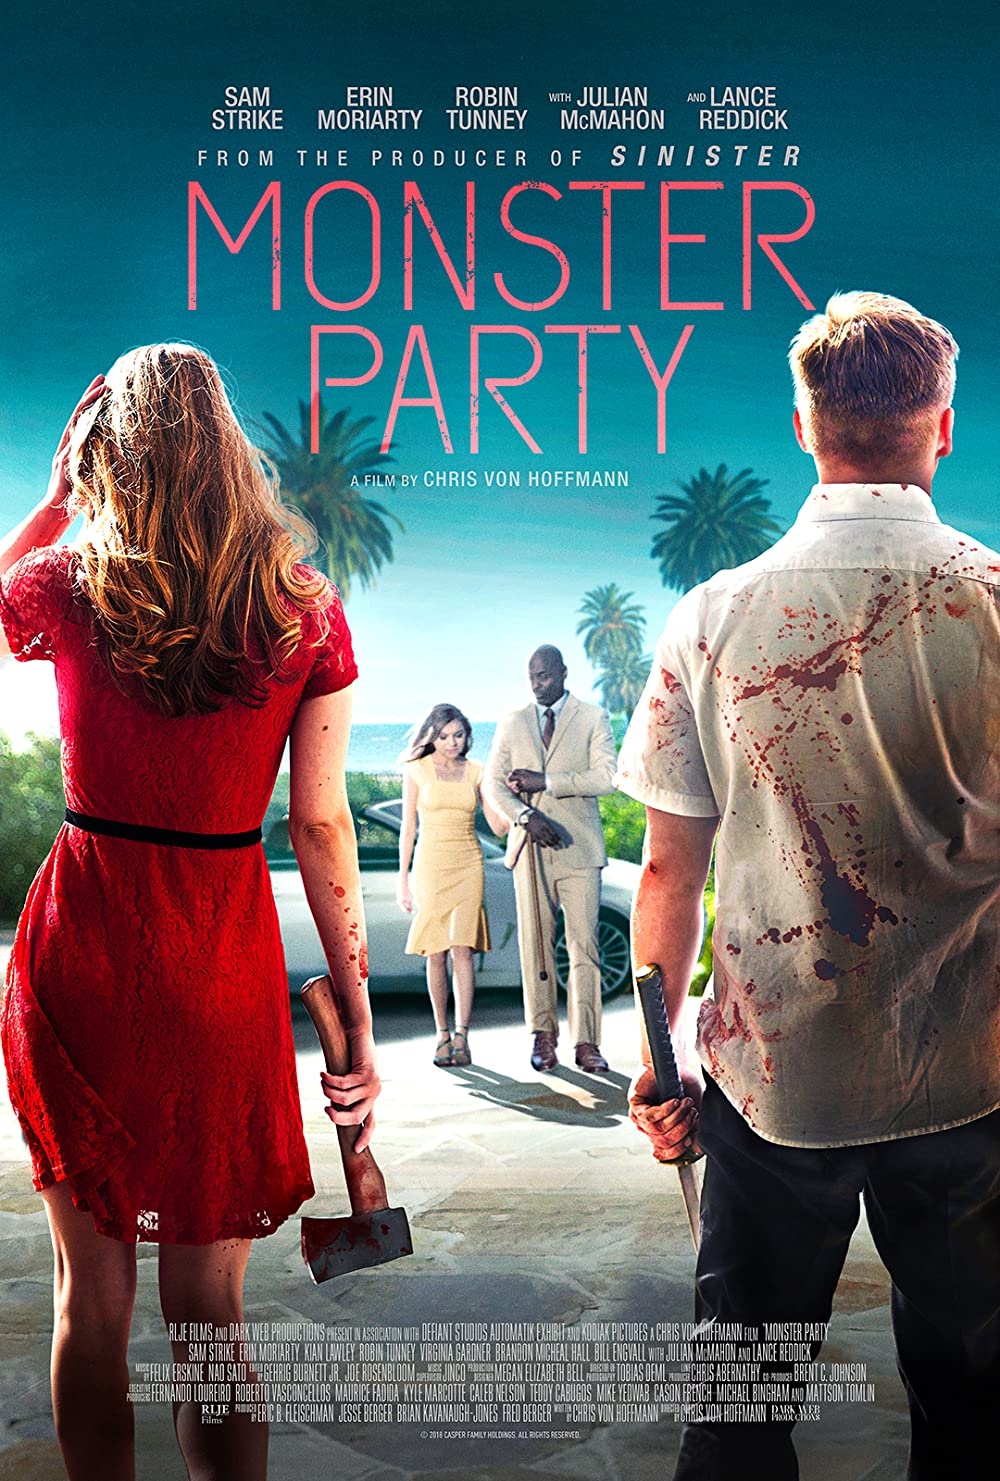 Filmbeschreibung zu Monster Party